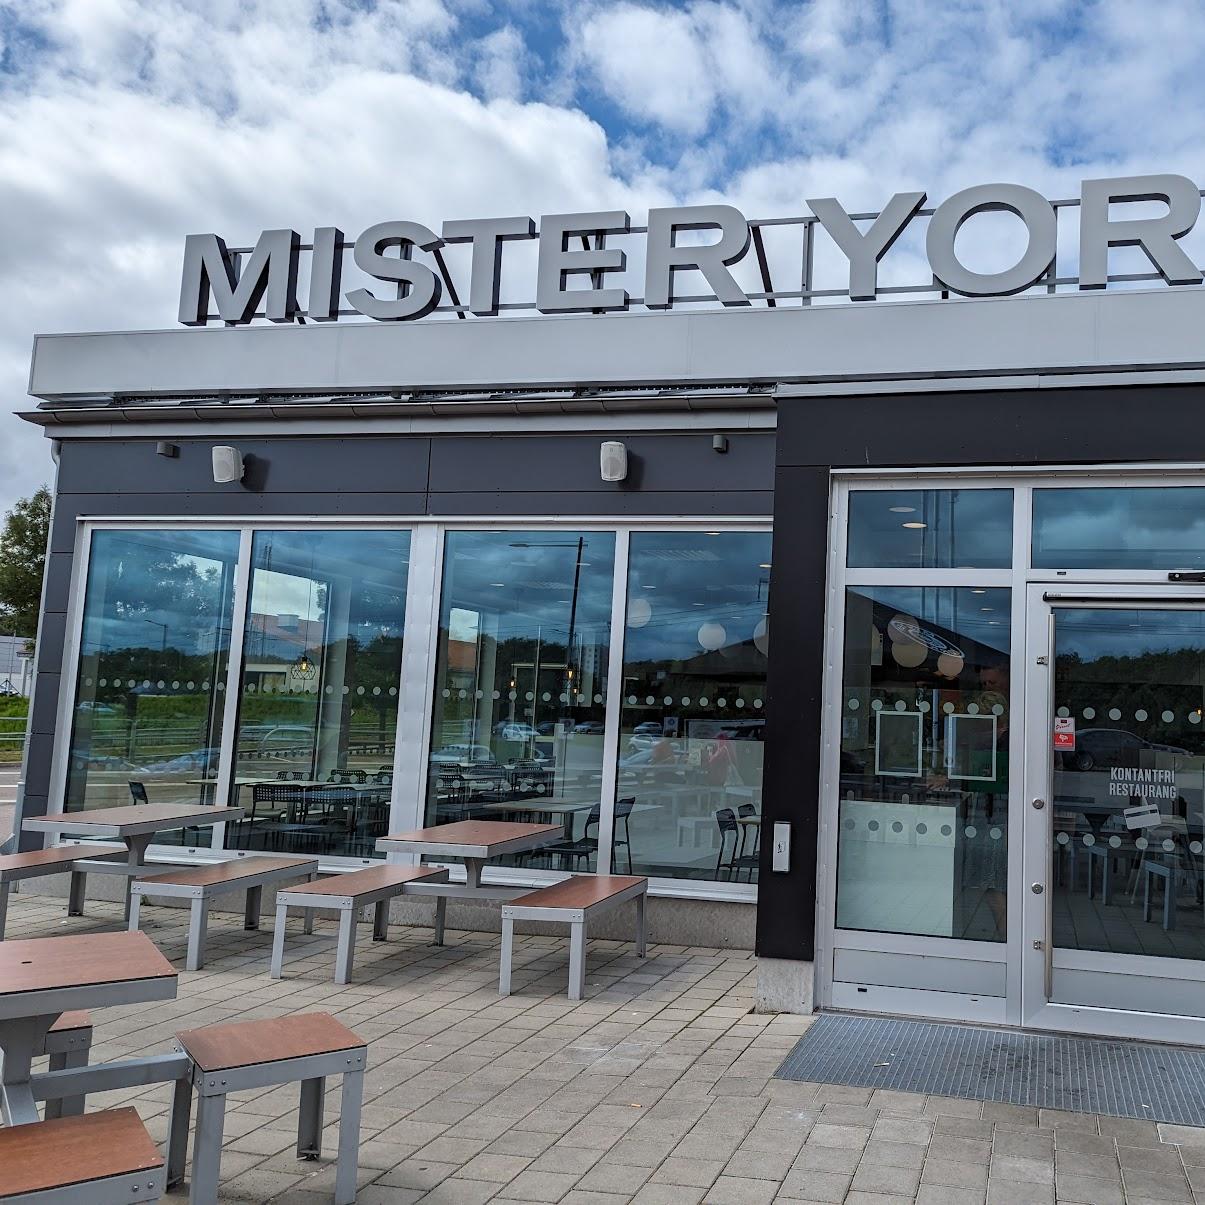 Restaurant "Mister York" in Falkenberg